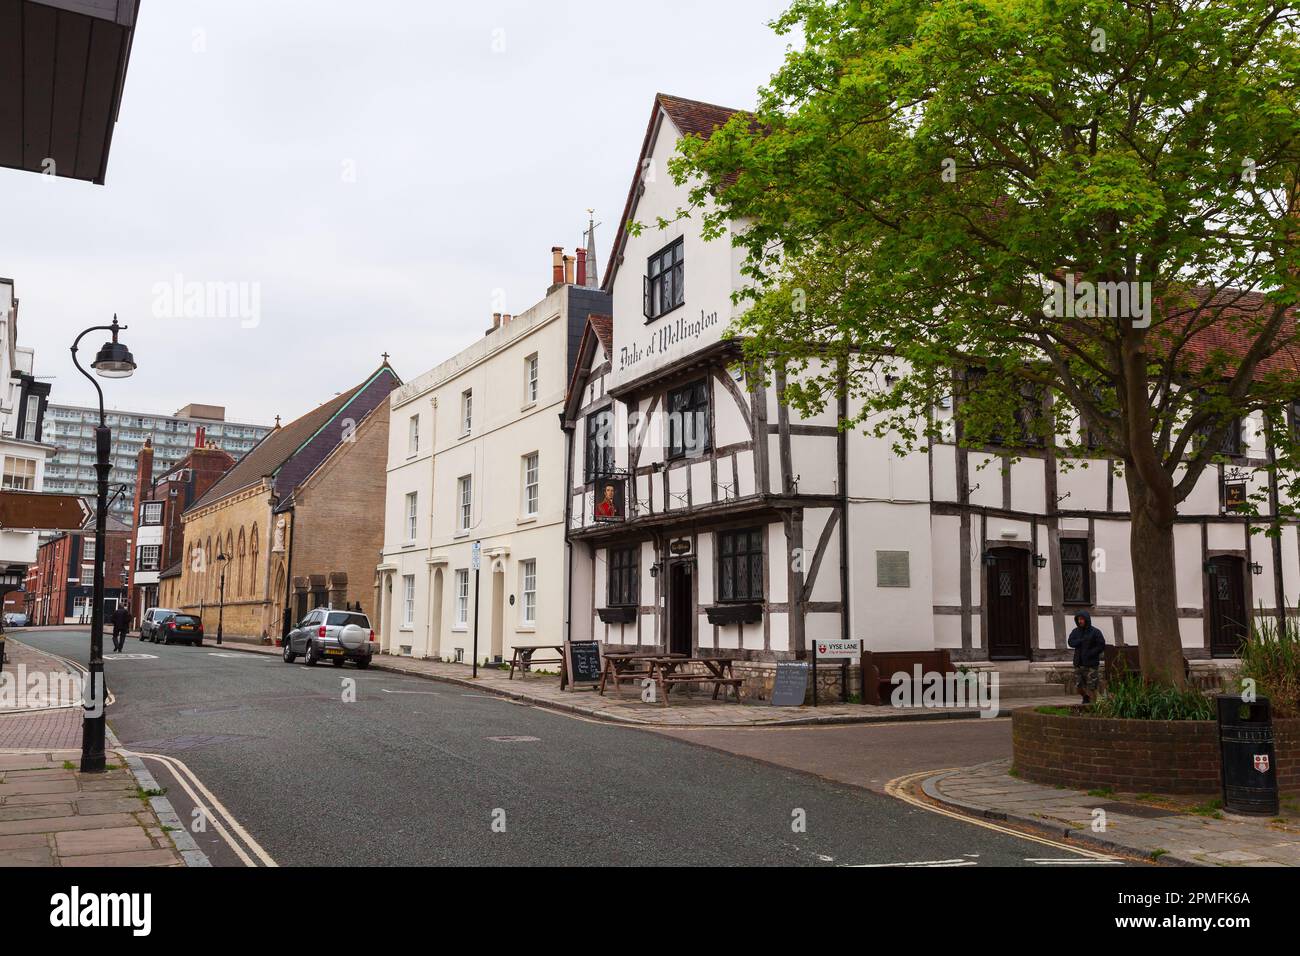 Southampton, Großbritannien - 23. April 2019: Blick auf die Southampton Street mit dem Pub Duke of Wellington und einem alten Wohnhaus Stockfoto